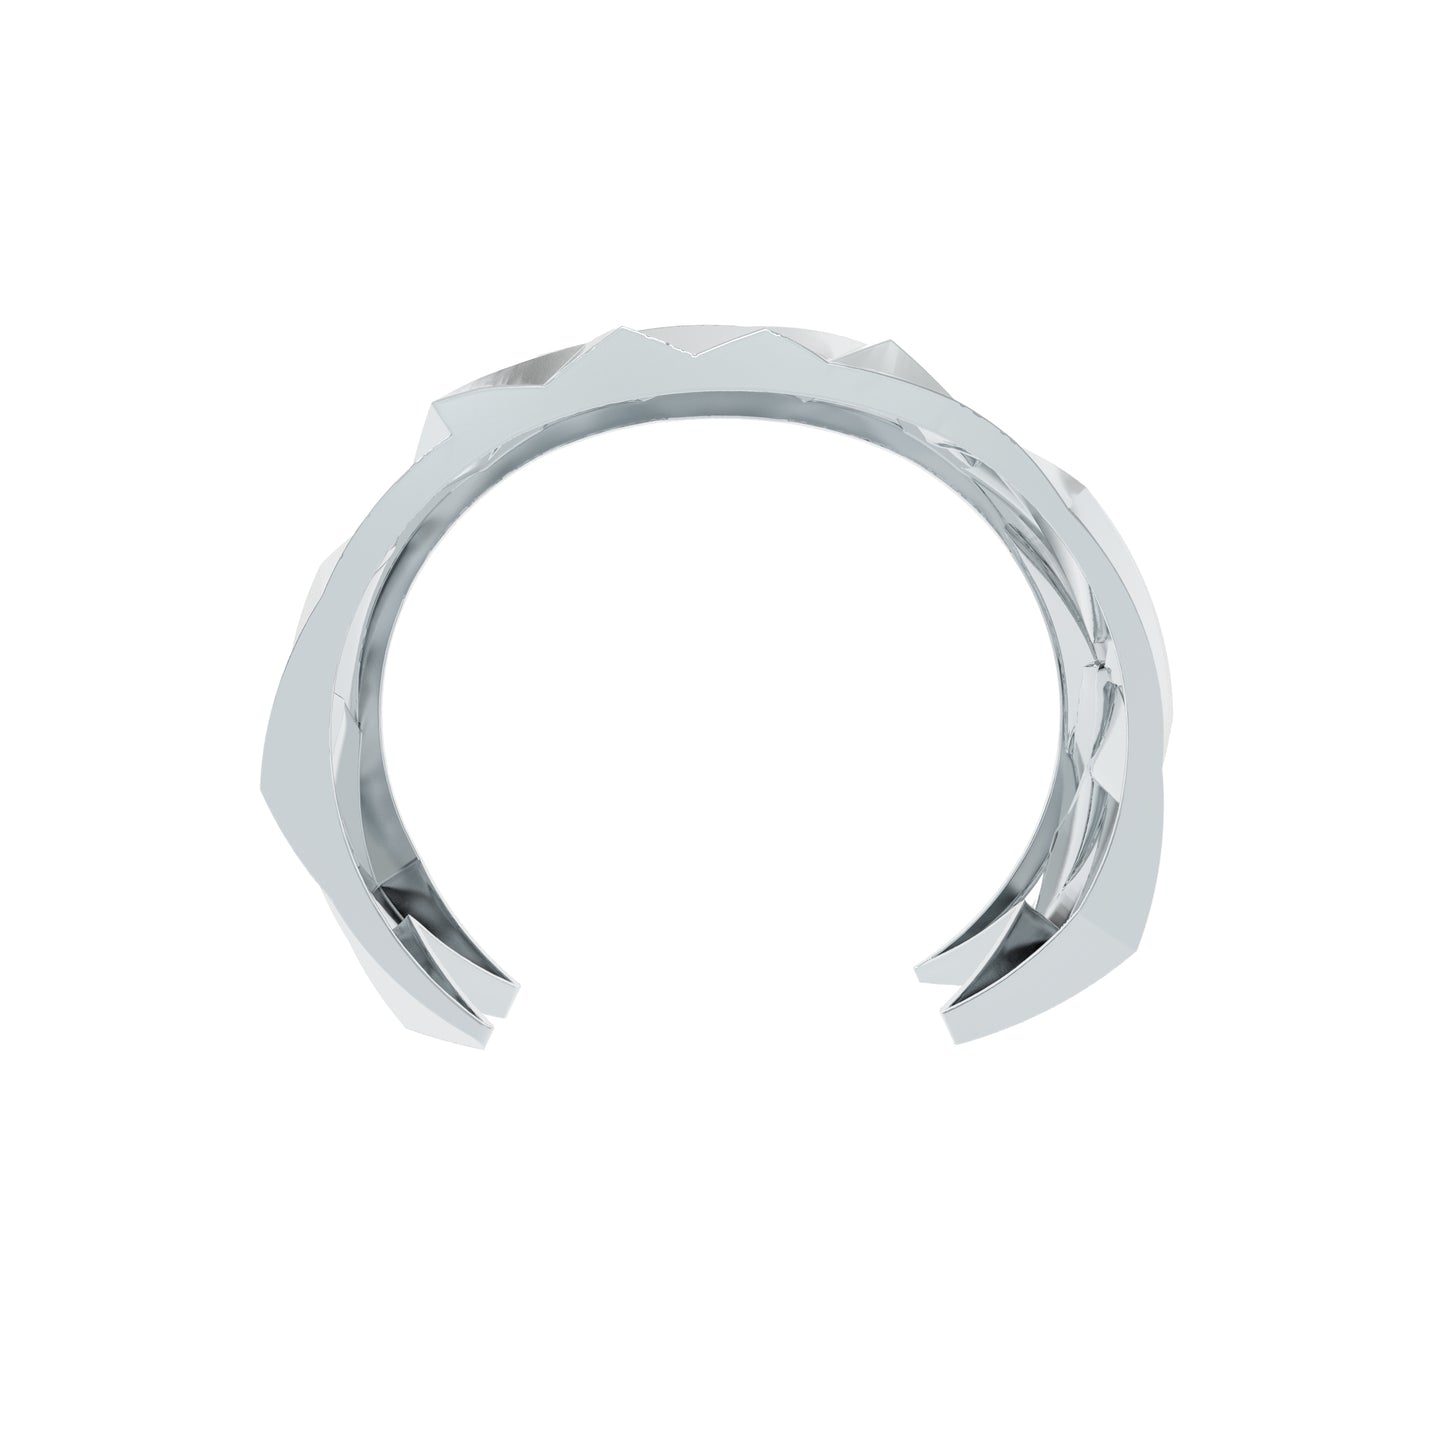 Geometric Silver Cuff Bracelet